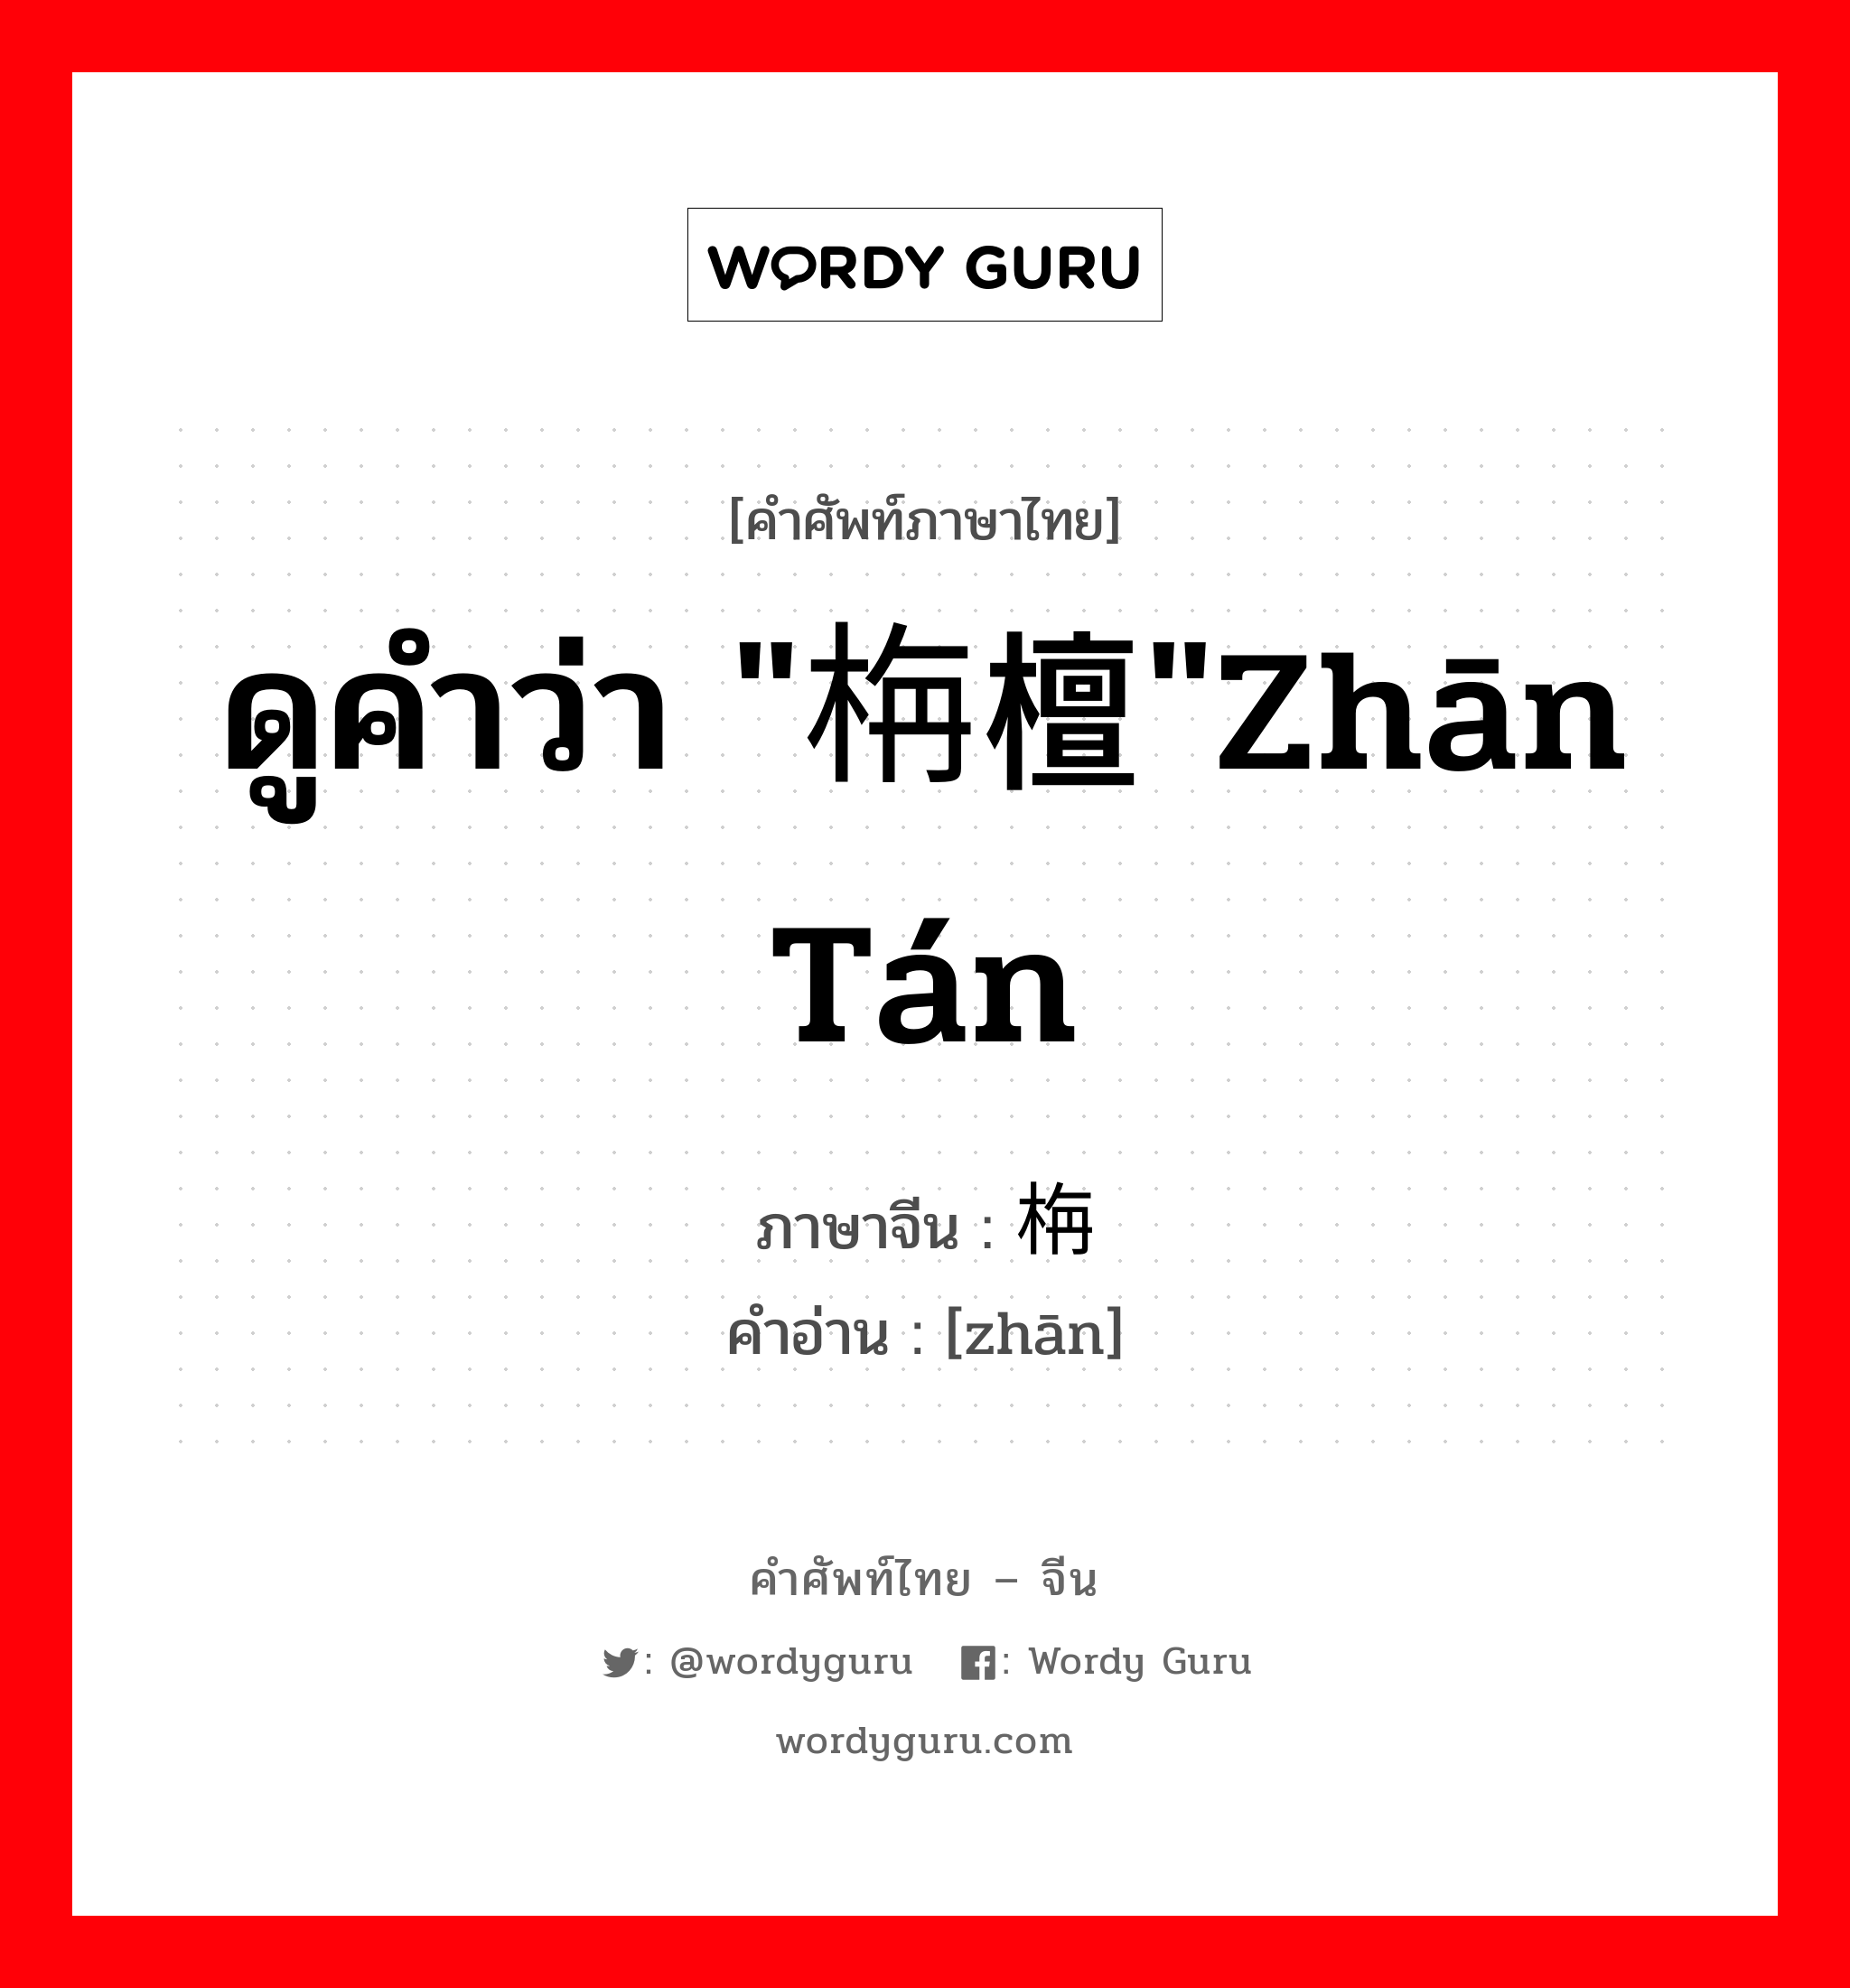 ดูคำว่า "栴檀"zhān tán ภาษาจีนคืออะไร, คำศัพท์ภาษาไทย - จีน ดูคำว่า "栴檀"zhān tán ภาษาจีน 栴 คำอ่าน [zhān]